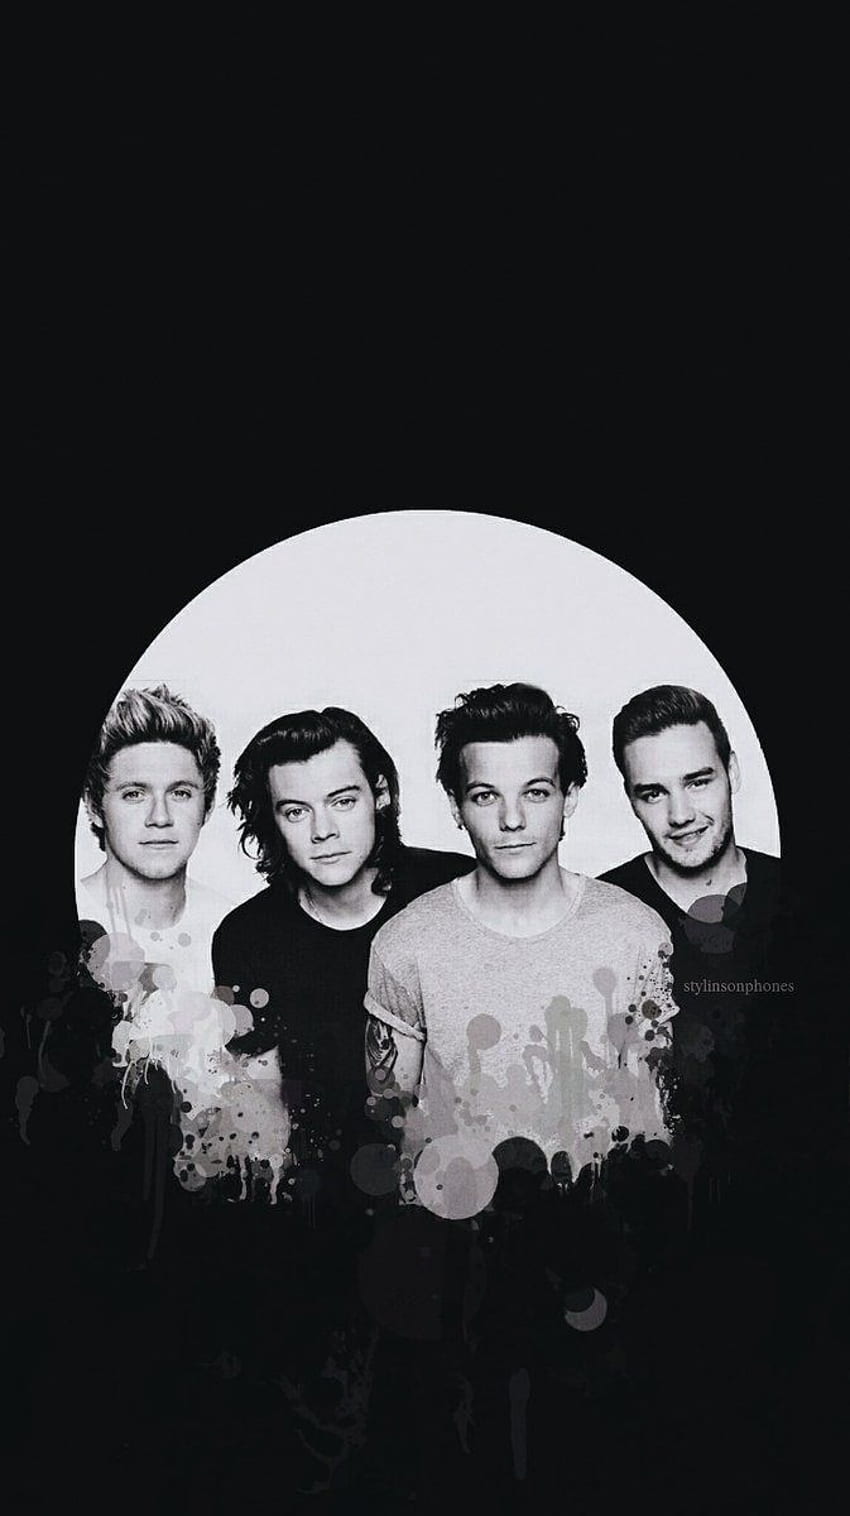 One Direction (002) - Wallpaper Desktop by nauroraribeiro on DeviantArt